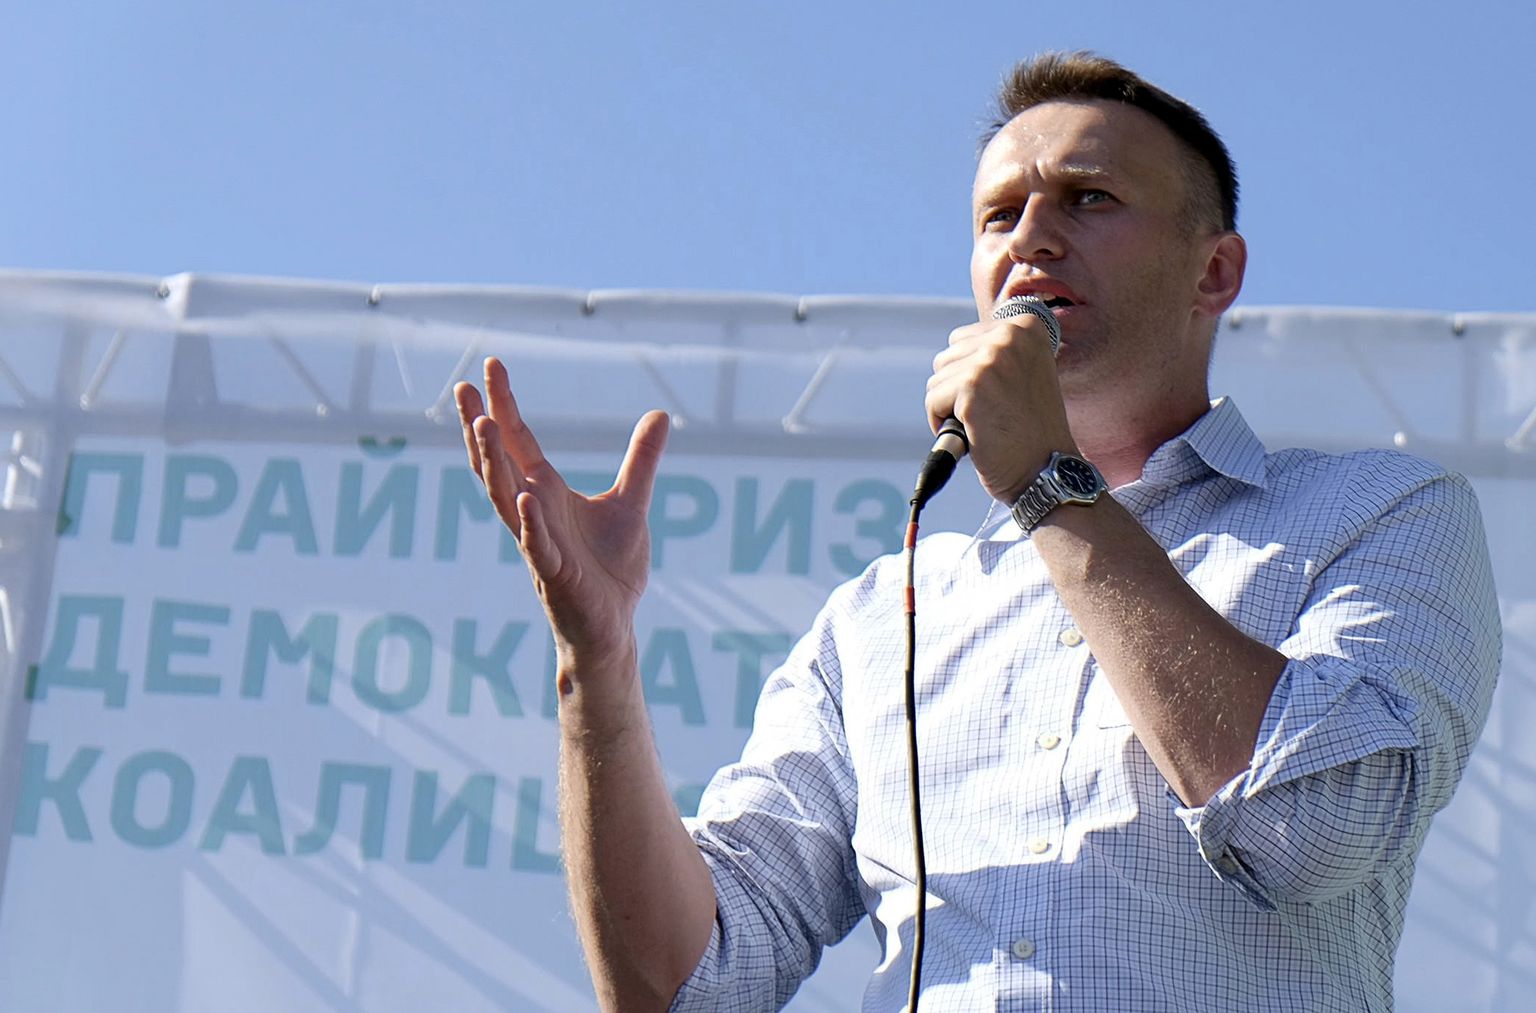 Venemaa opositsioonijuht Aleksei Navalnõi pidamas juunis 2015 Novosibirskis kõnet